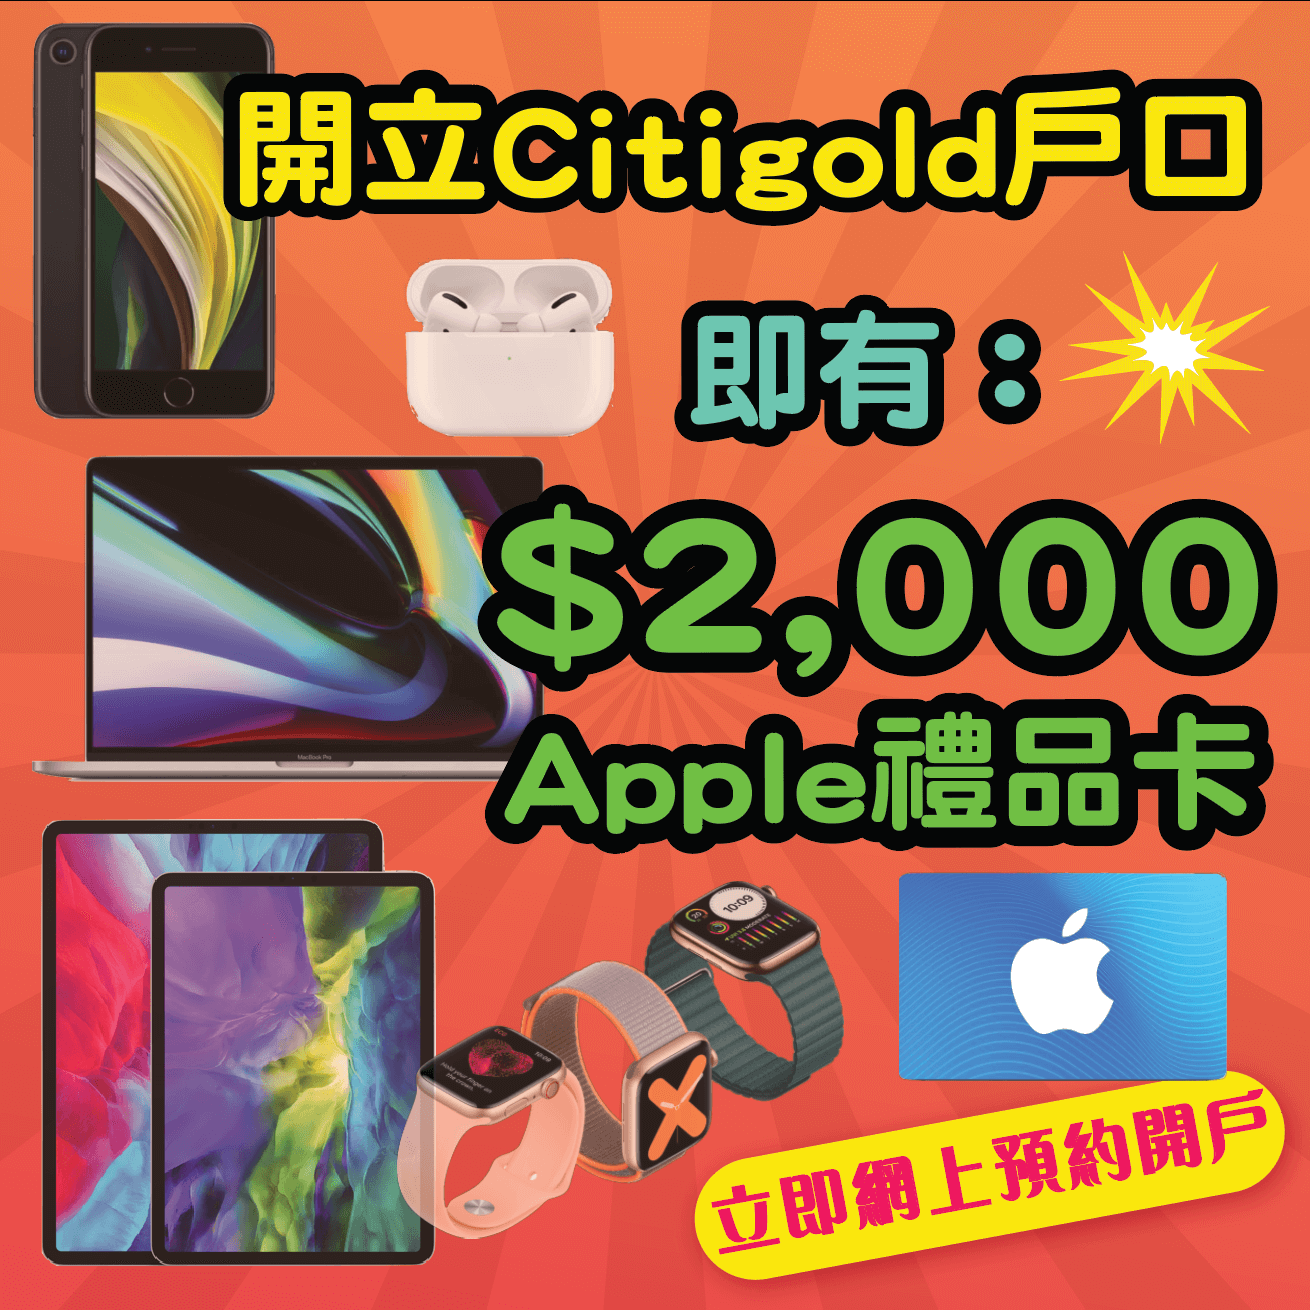 【開戶即有額外$2,000 Apple Gift Card】12月31日或之前經小斯申請Citigold有額外$2,000 Apple Gift Card！開戶仲有高達$38,800獎賞！